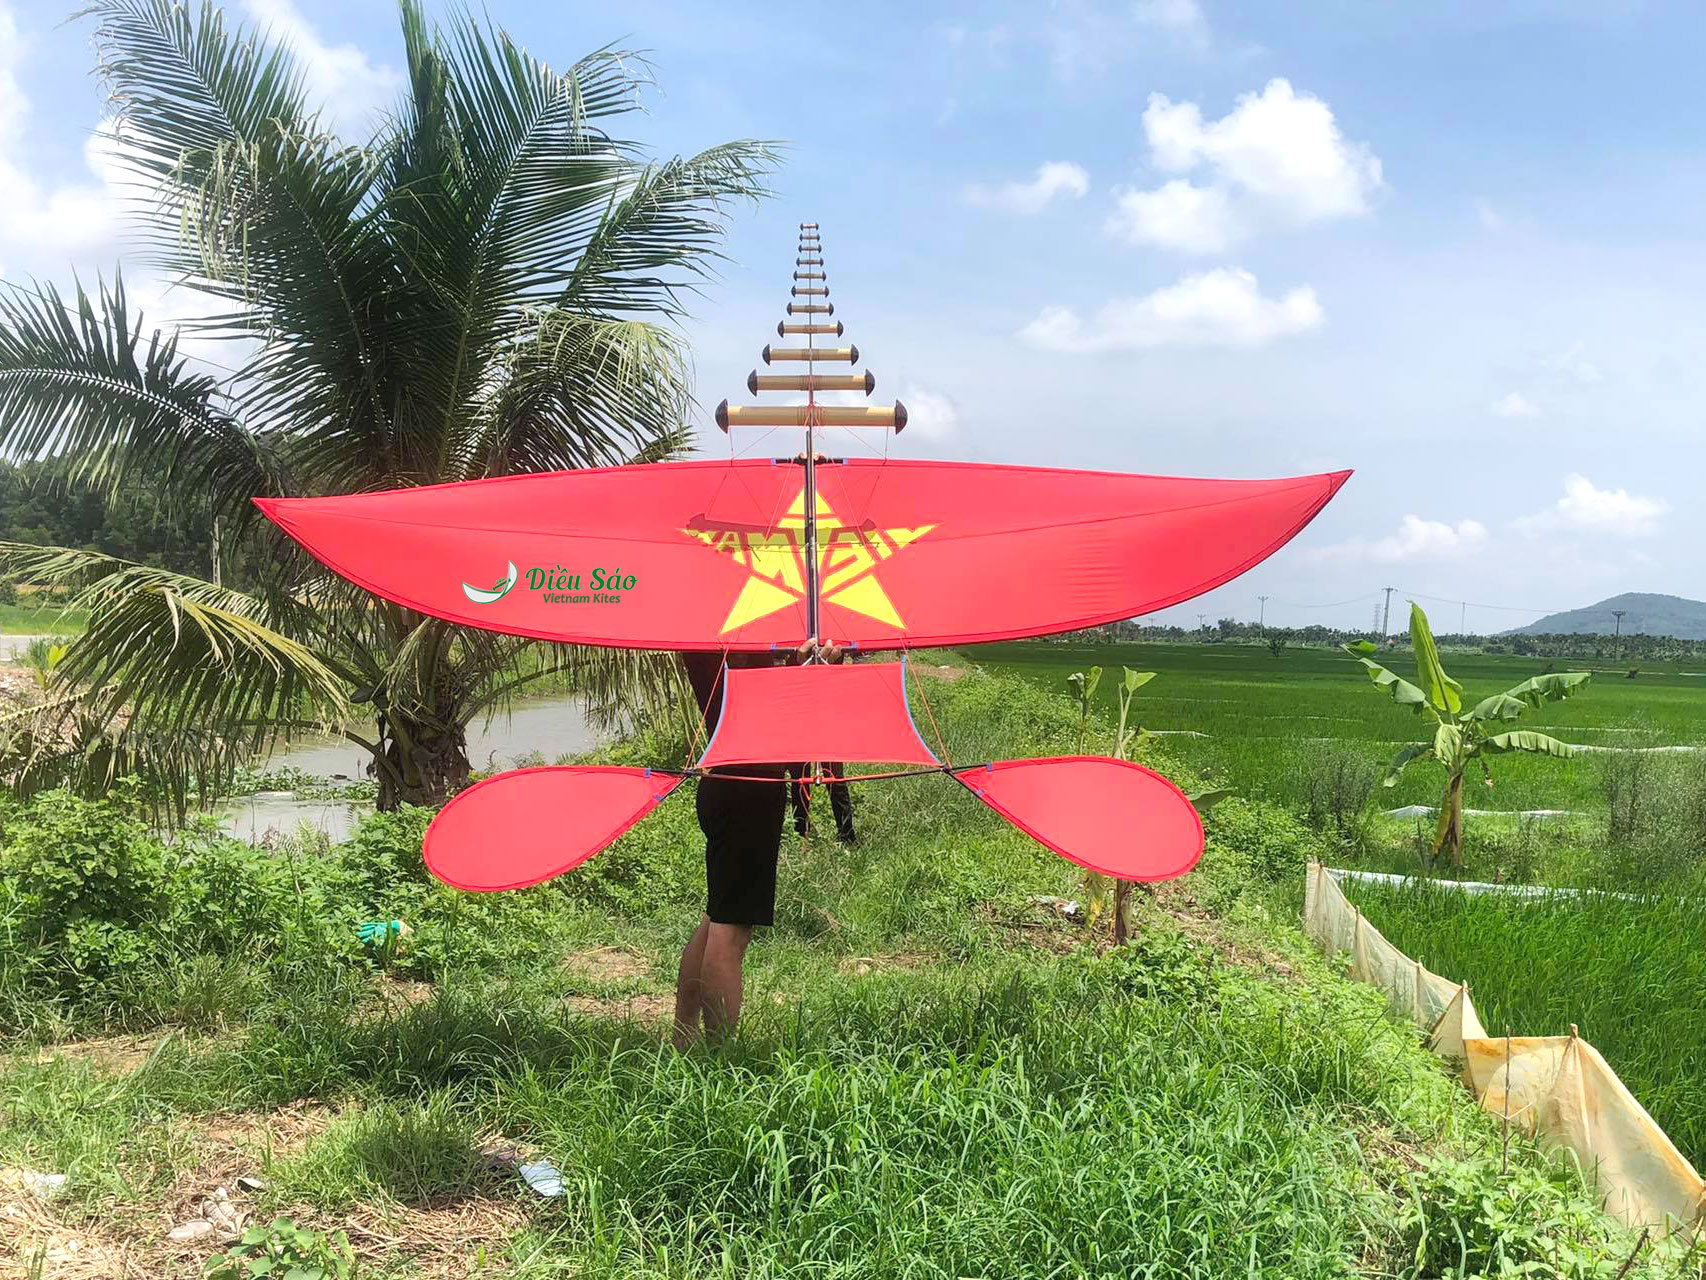 Nếu bạn đang tìm kiếm một trò chơi giải trí thú vị cho cả gia đình, Vietnam Kites chắc chắn là lựa chọn hoàn hảo. Hãy cùng nhau tham gia và chiêm ngưỡng những chú diều sáo đầy màu sắc thổi bay trên trời xanh nước biển. Đây chắc chắn sẽ là một trải nghiệm đáng nhớ cho mọi người.